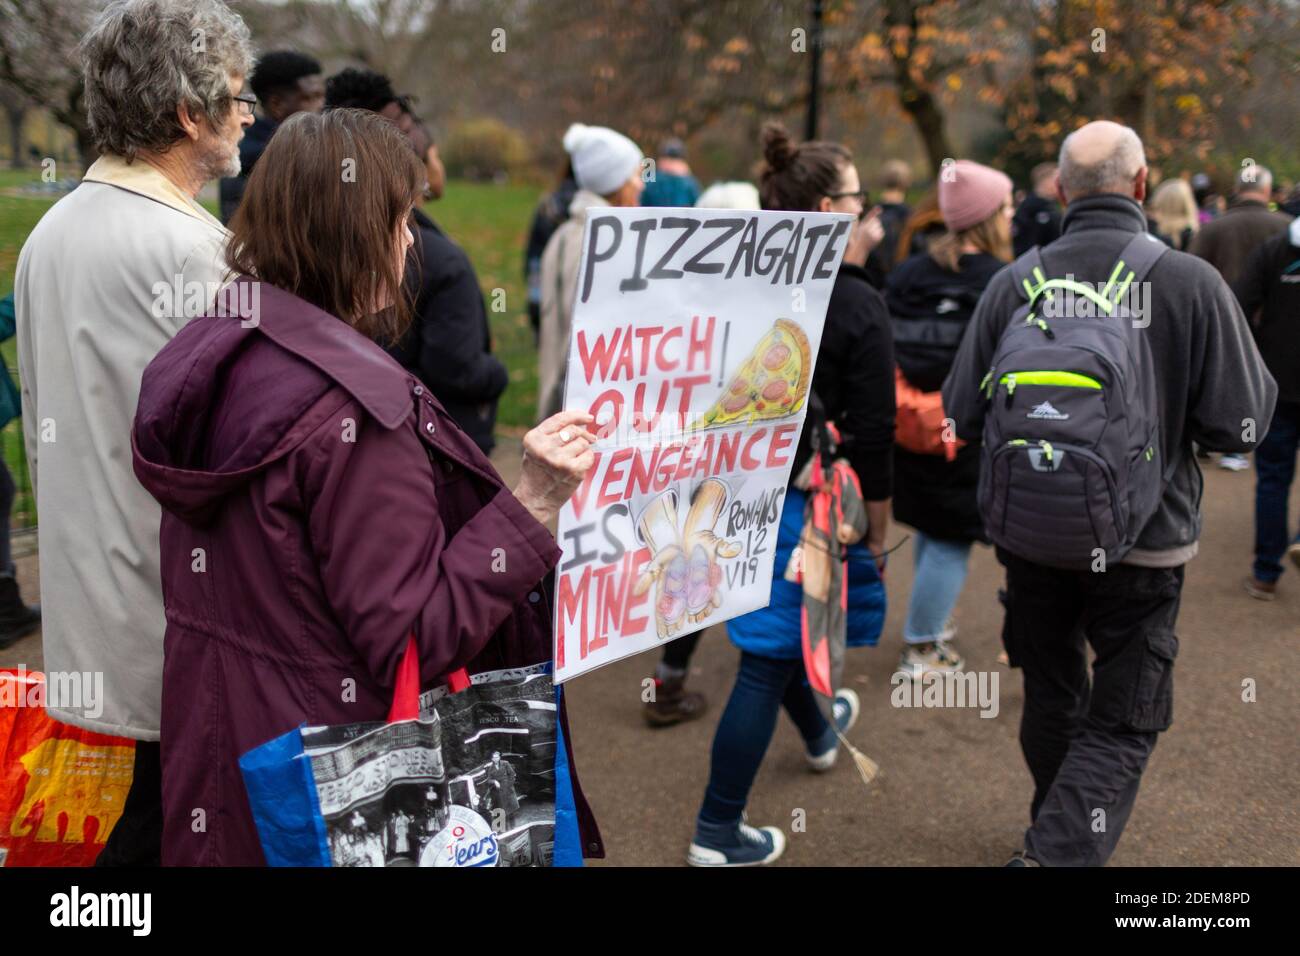 Manifestation anti-verrouillage, St James's Park, Londres, 28 novembre 2020. Un manifestant tenant un écriteau de protestation de Pizzagate. Banque D'Images